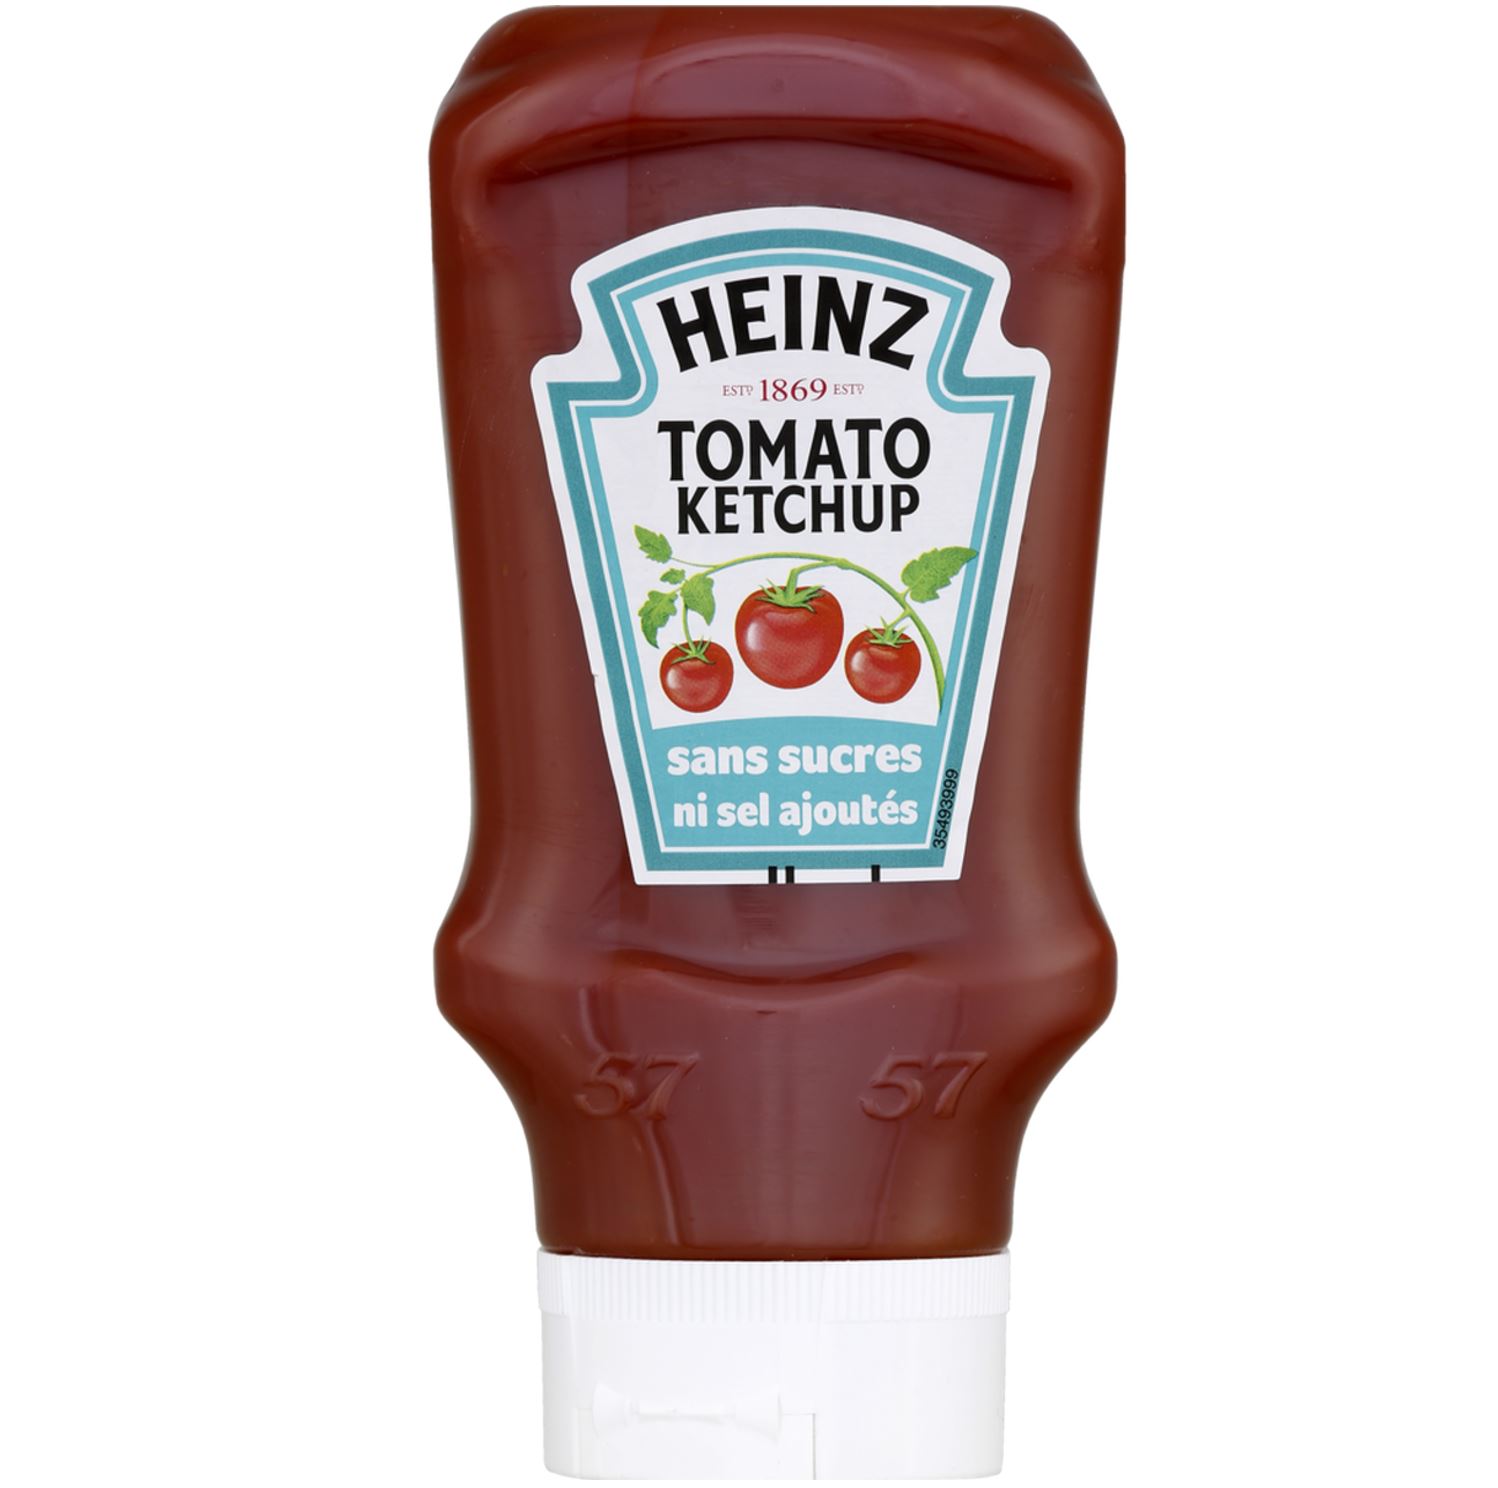 Tomato Ketchup sans sucres ni sel ajoutés